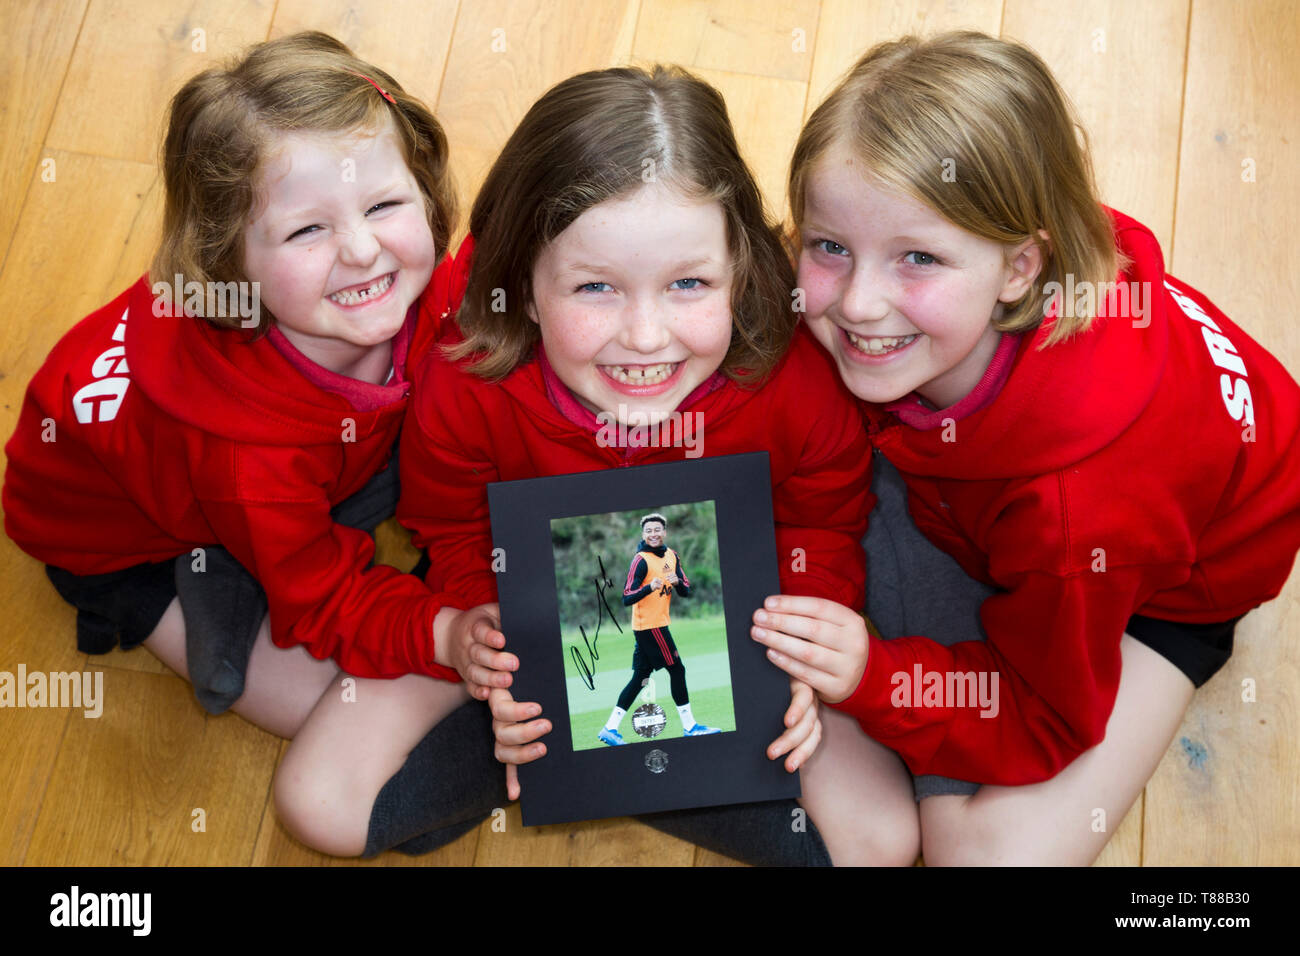 Drei Fußball-Fan/Lüfter/Grundschule Mädchen / Kinder / Kinder mit einem Autogramm Foto von Manchester United und England soccer player Jesse Lingard. Stockfoto